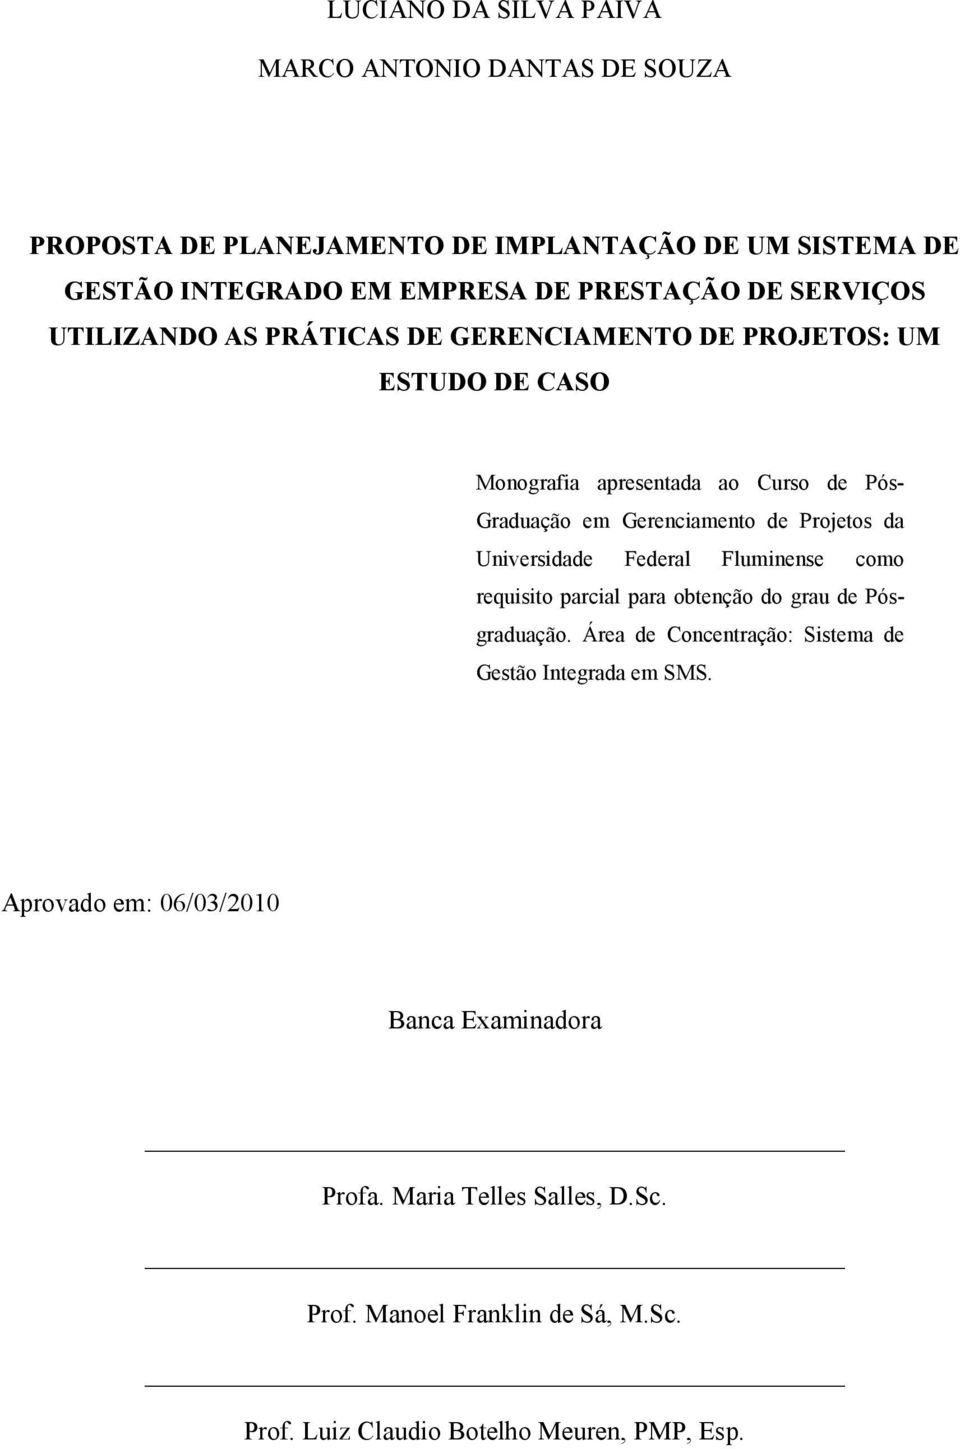 Projetos da Universidade Federal Fluminense como requisito parcial para obtenção do grau de Pósgraduação.